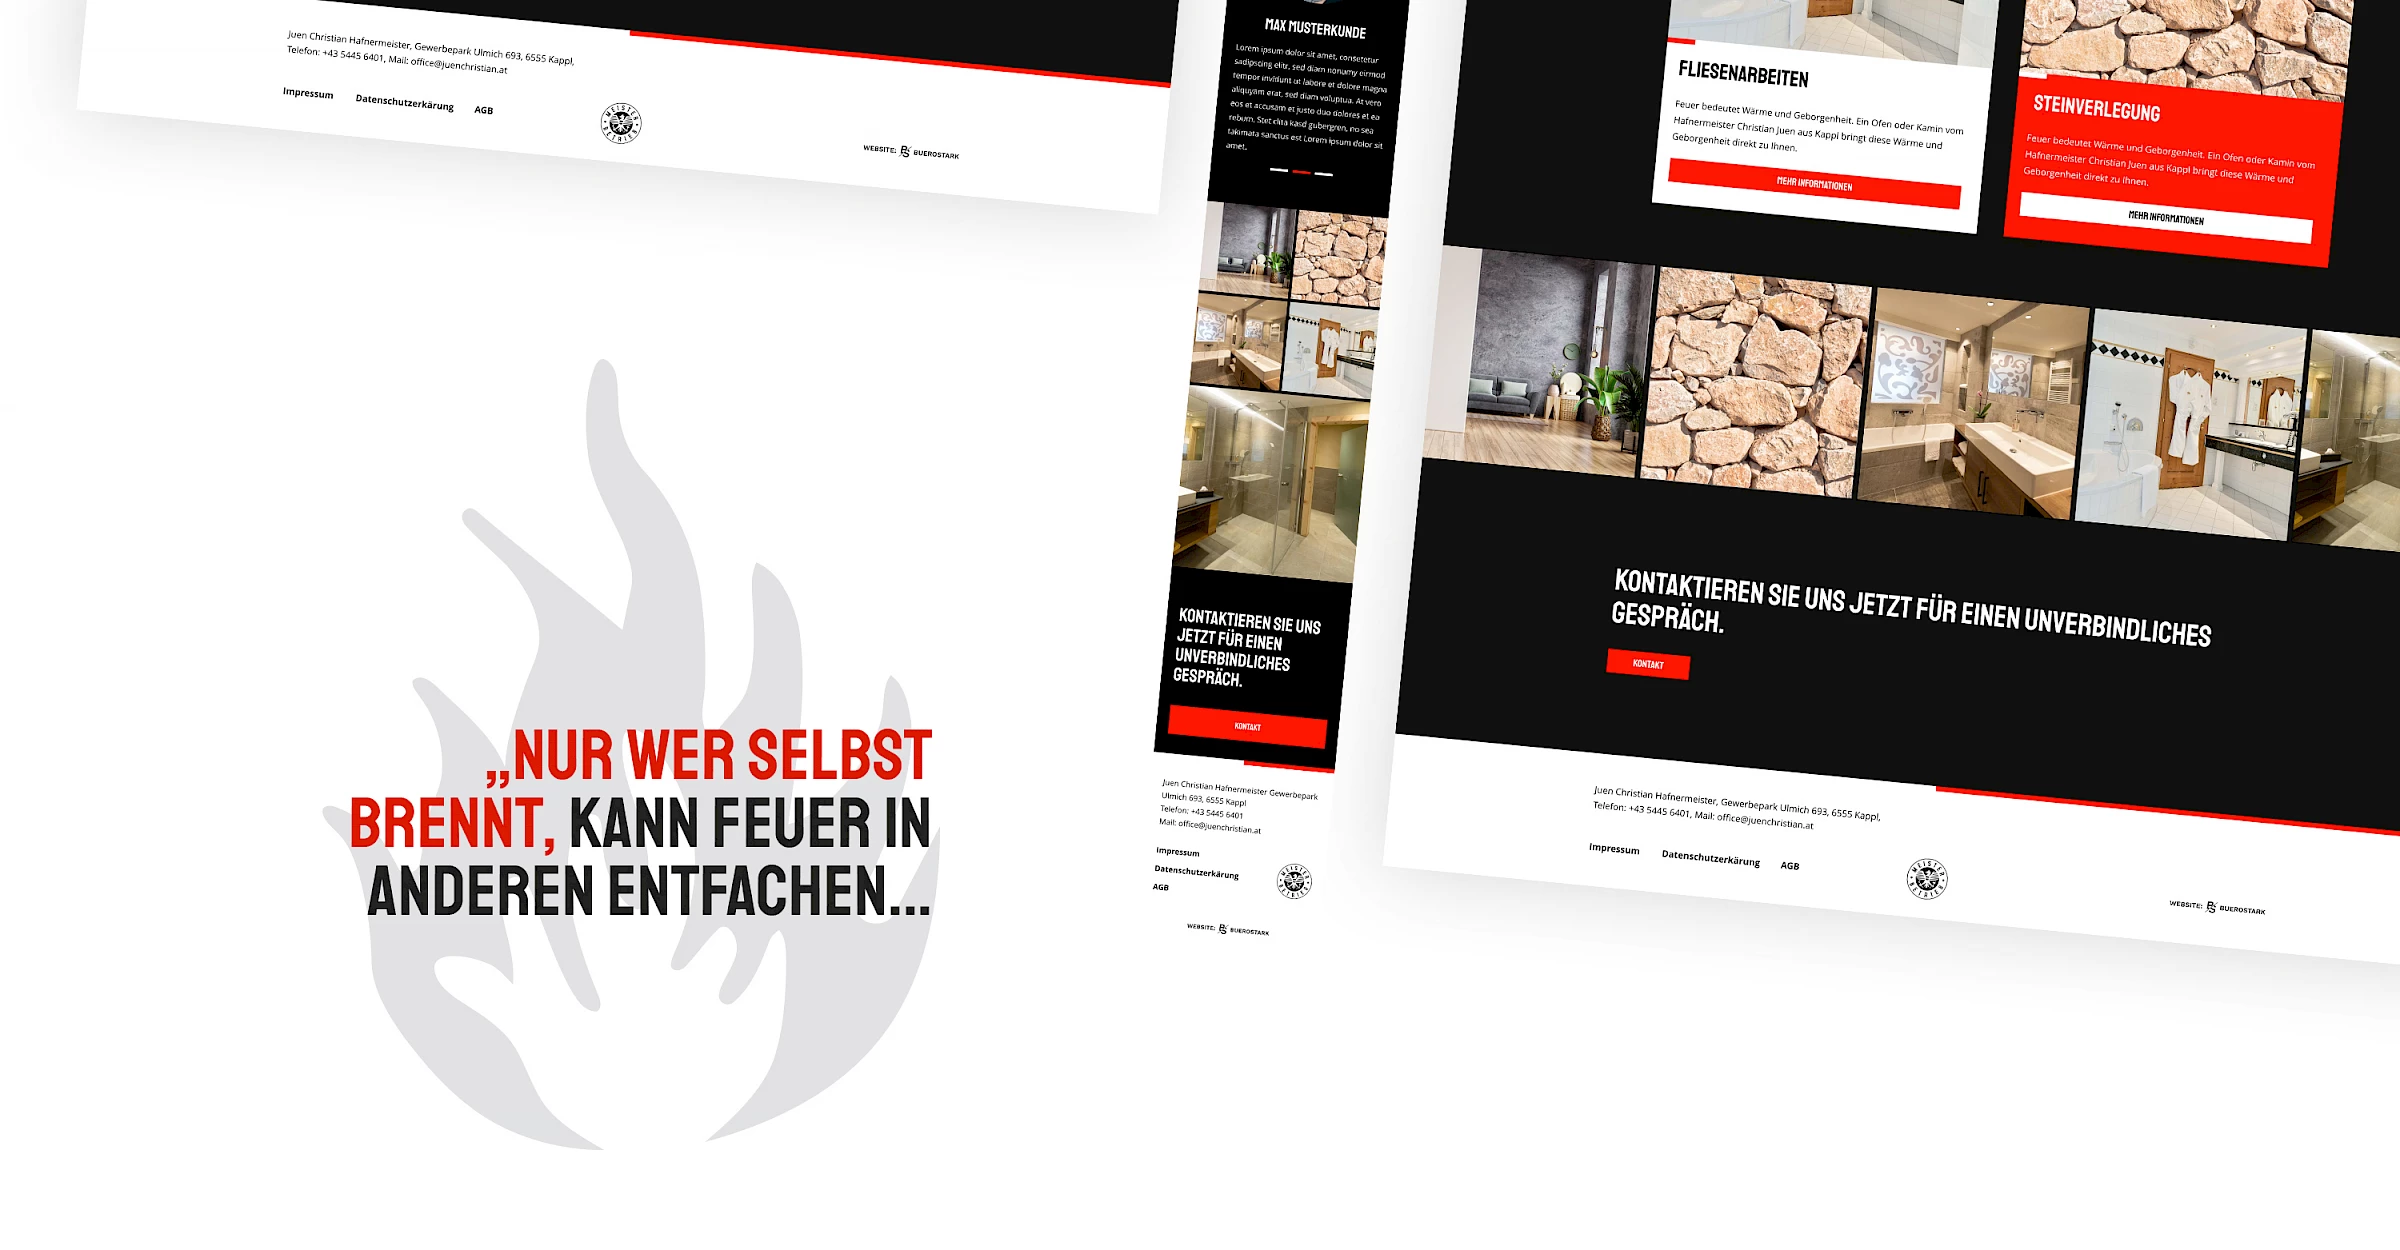 Webdesign der Website juenchristian.at, designed und programmiert von Buerostark Werbeagentur in Telfs